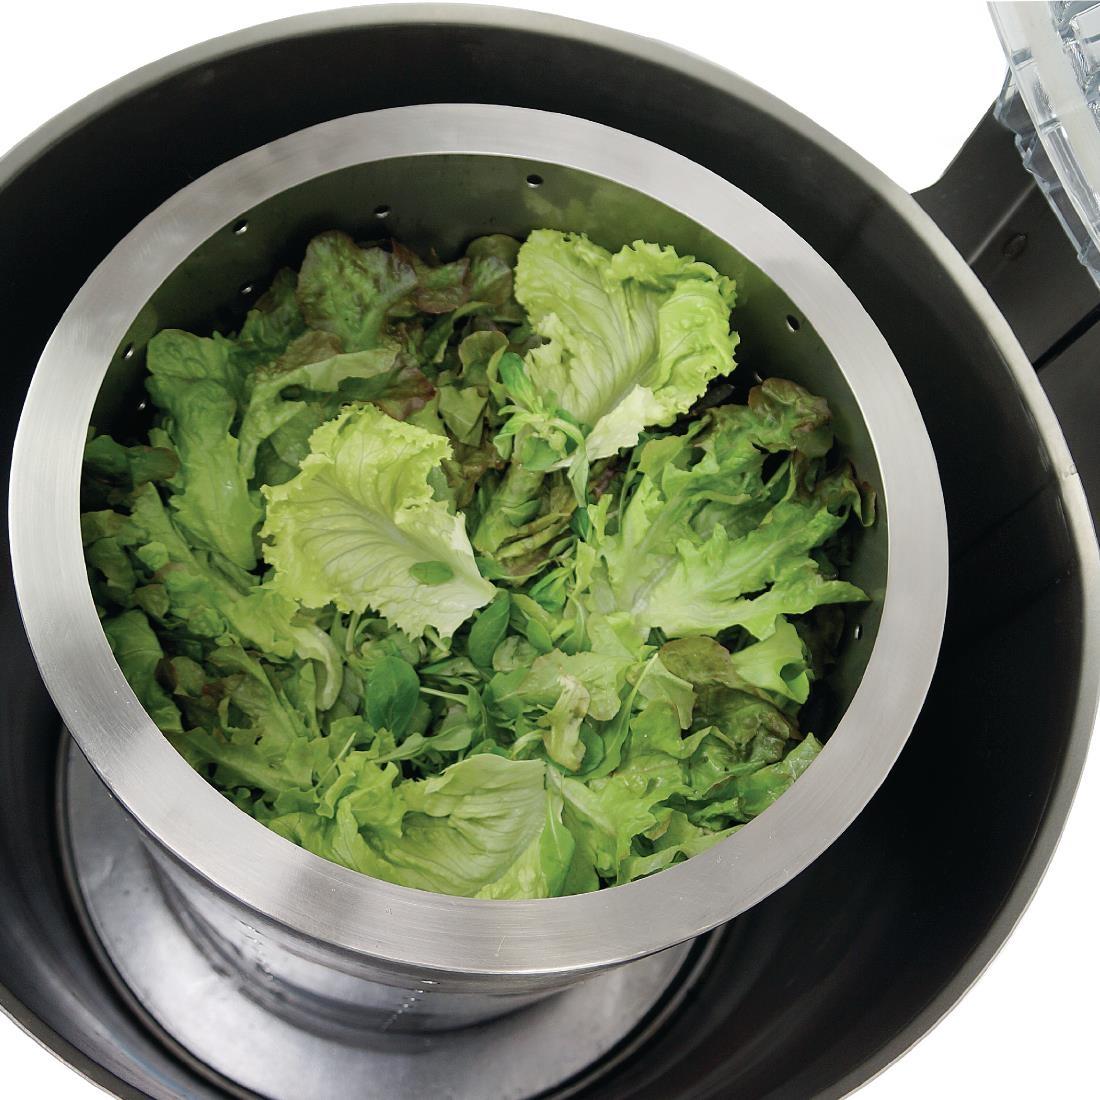 Sammic Commercial Salad Spinner 6kg ES-100 - GP983  - 8